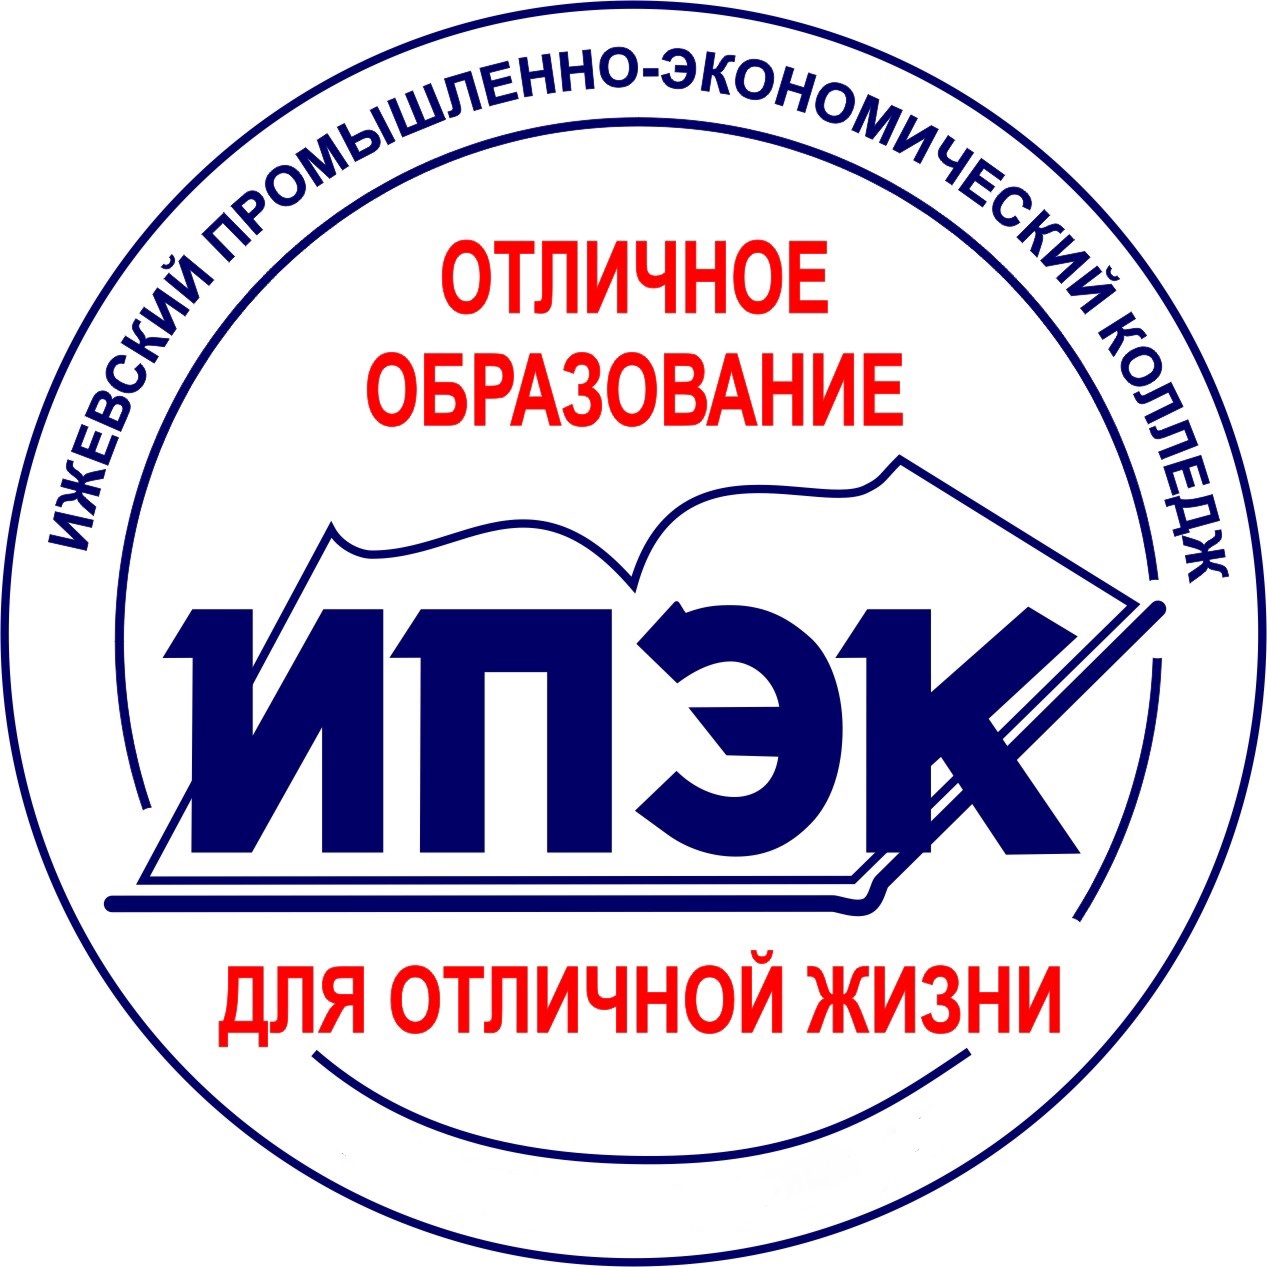 Логотип (Ижевский промышленно-экономический колледж)